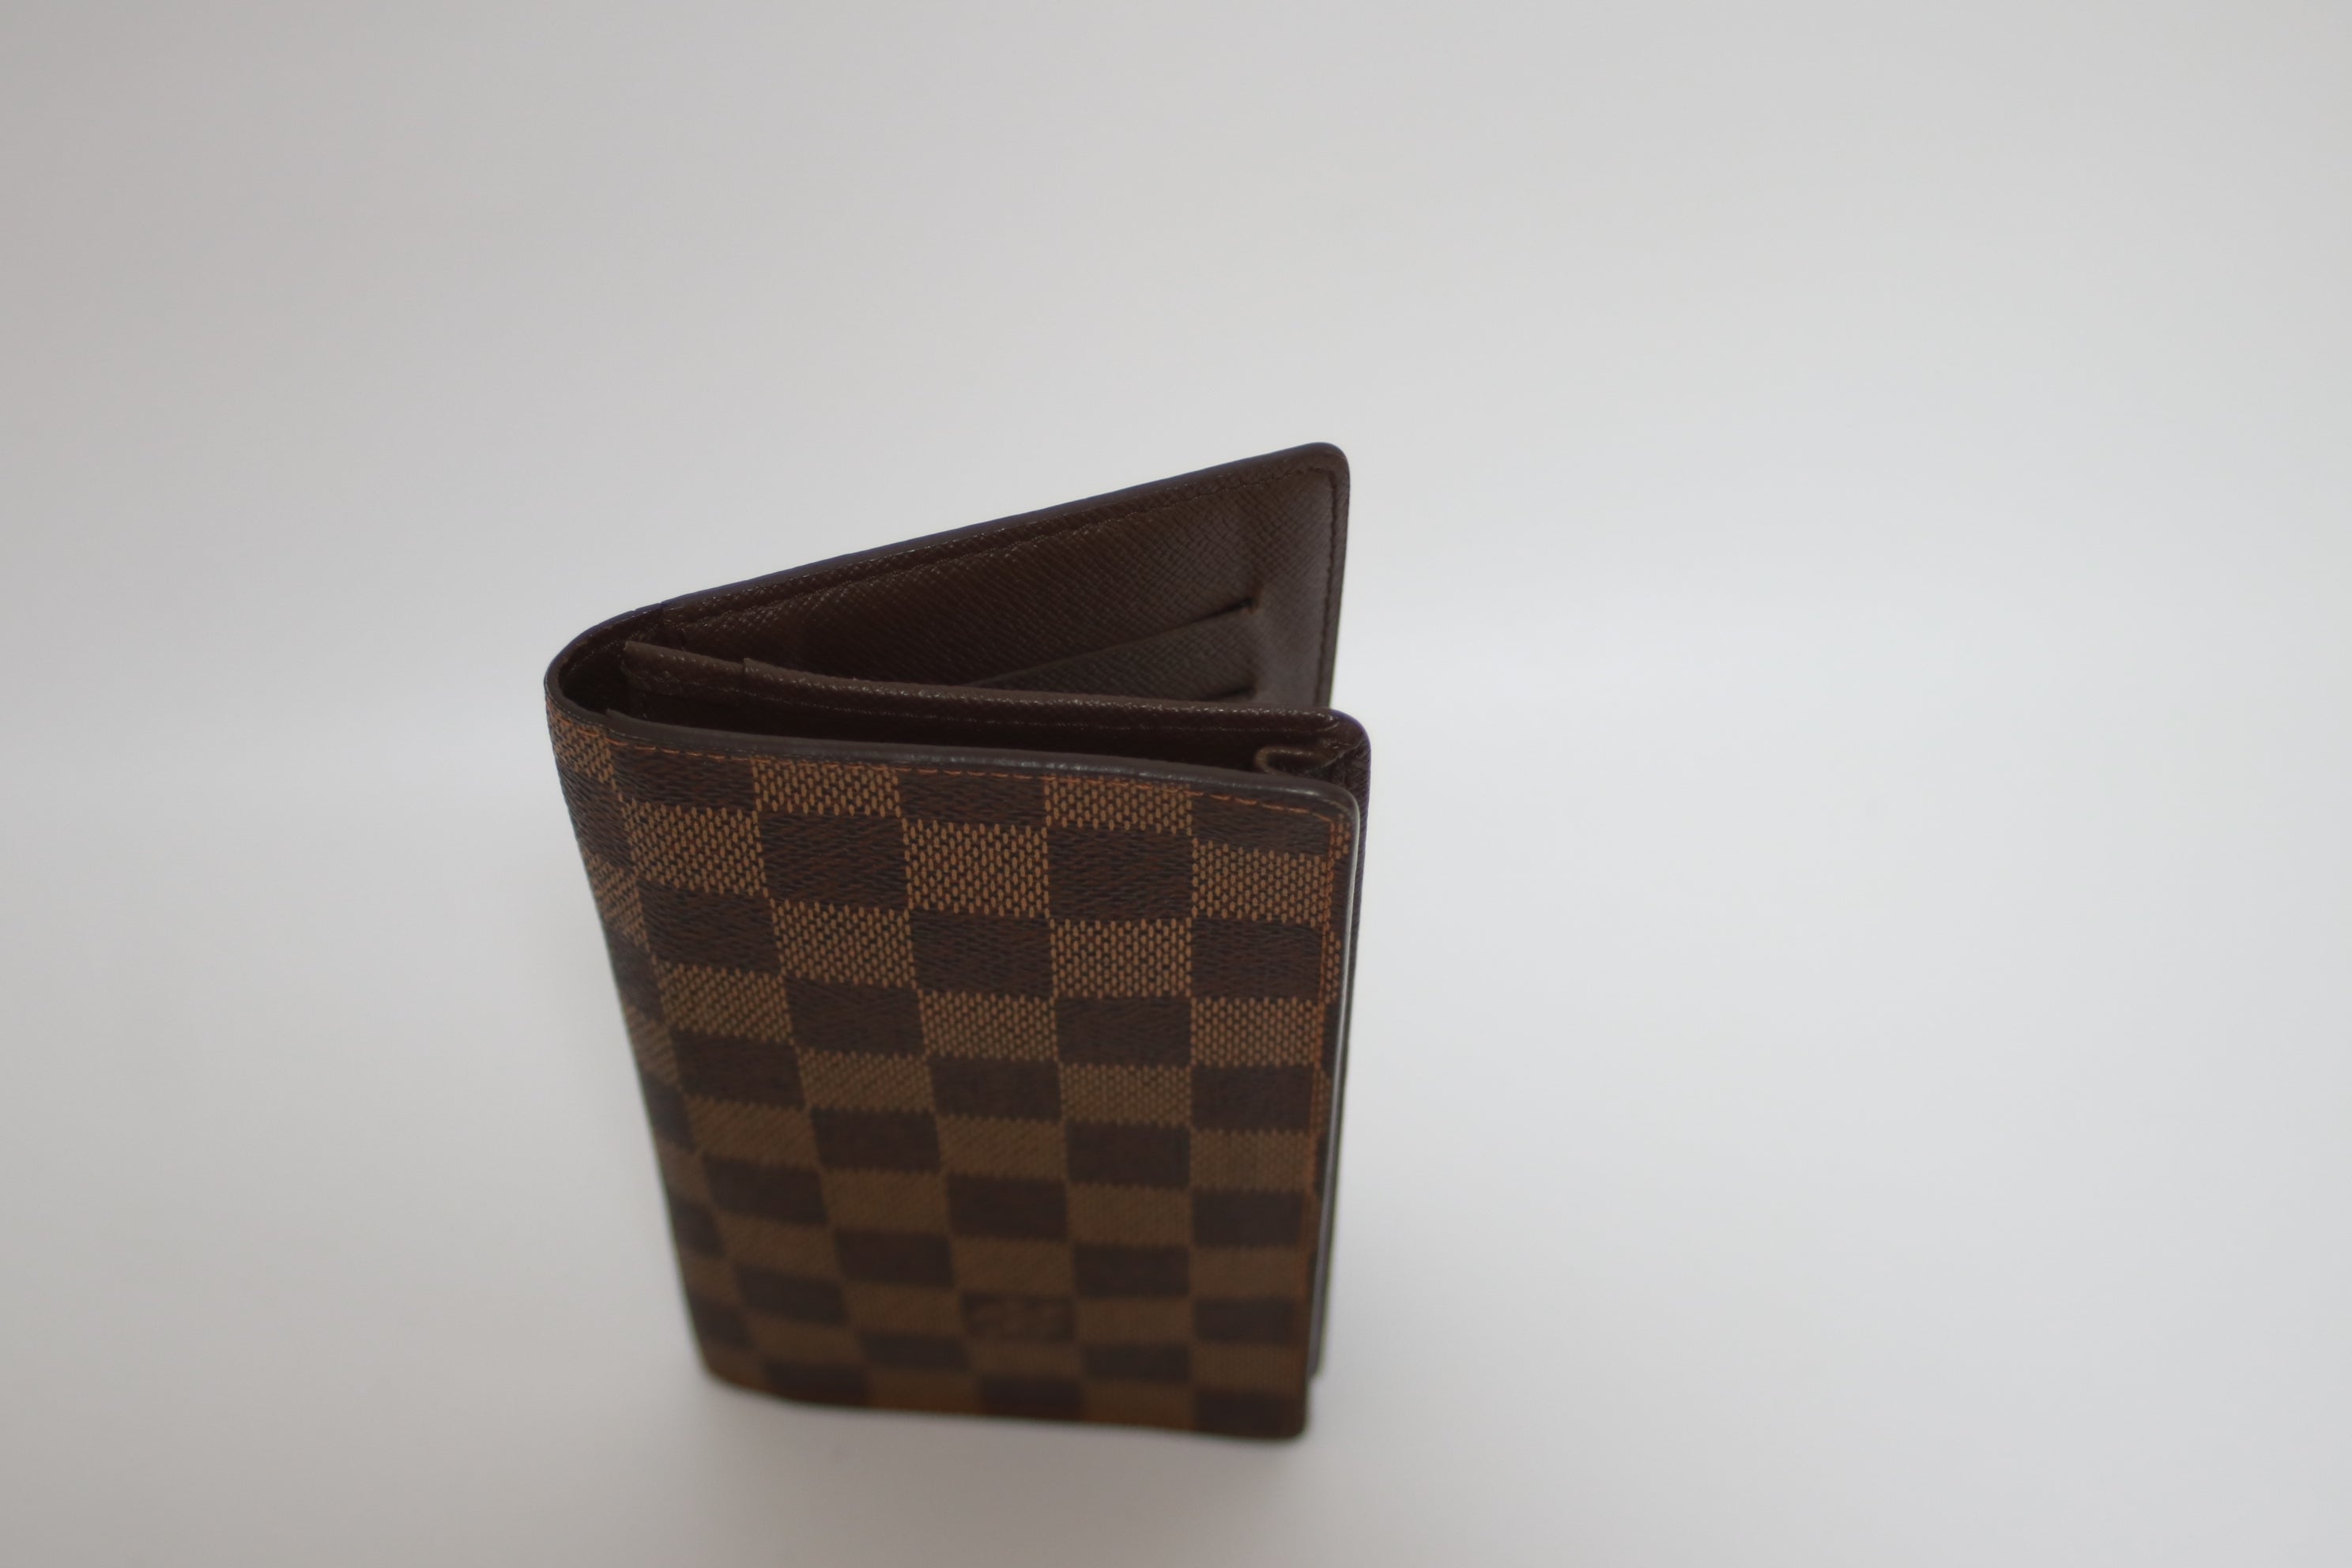 Louis Vuitton Trouville Handbag Used (6981)